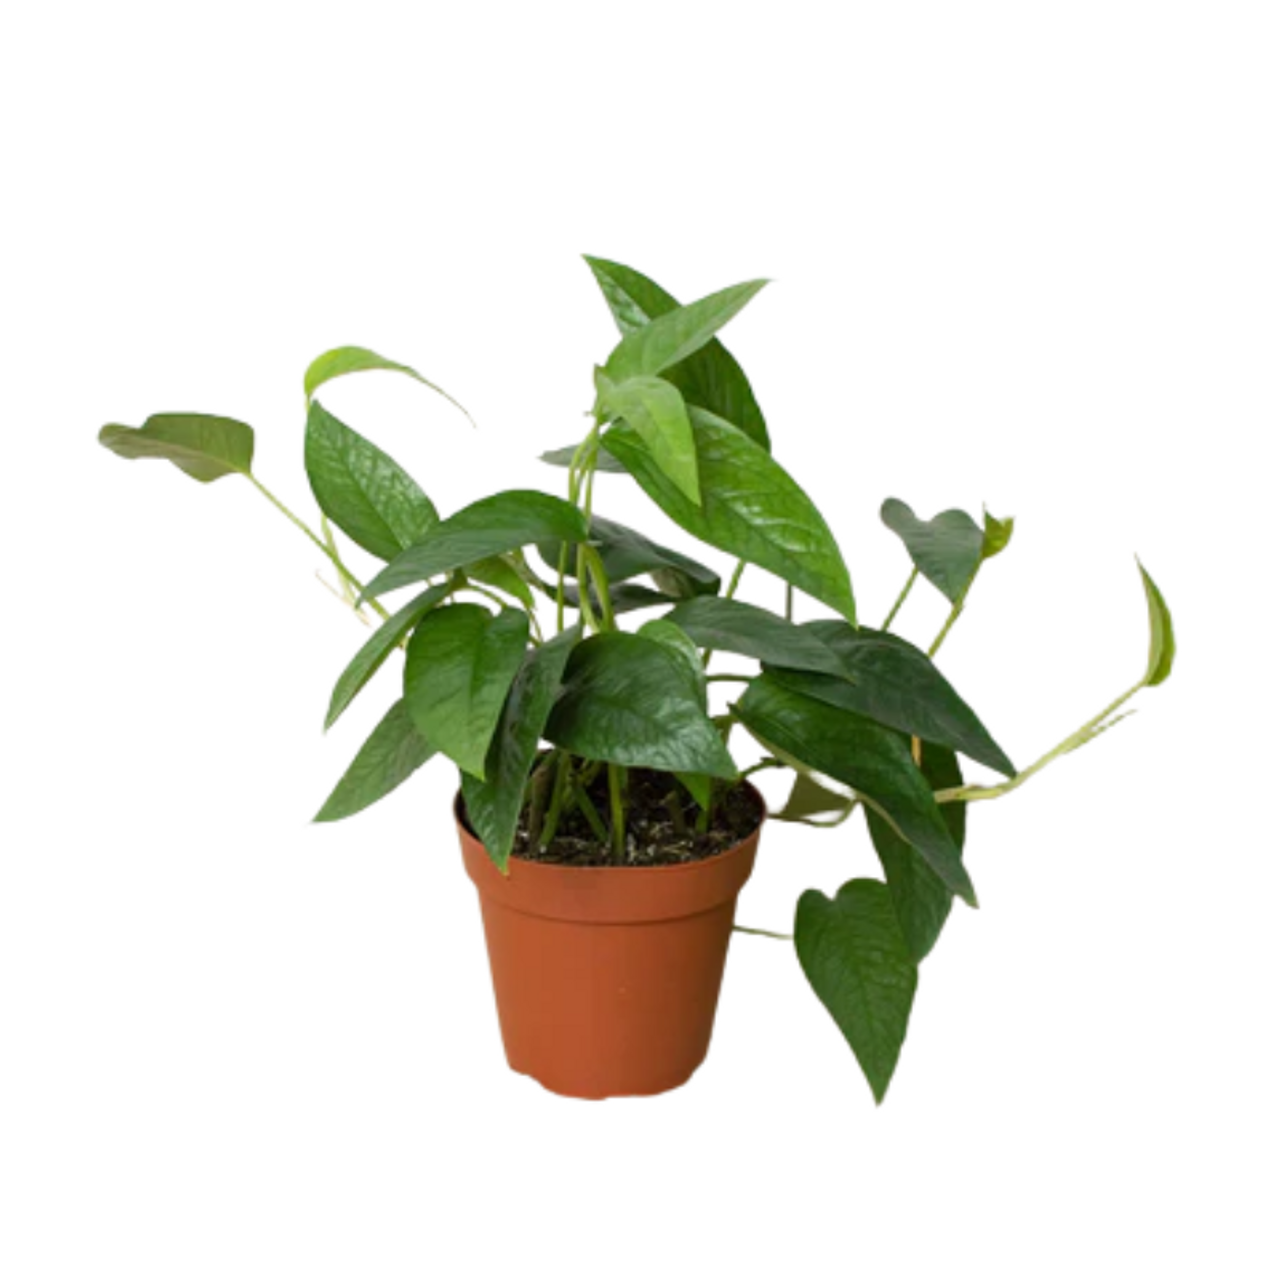 PlantChaser on X: Epipremnum pinnatum 'Mint